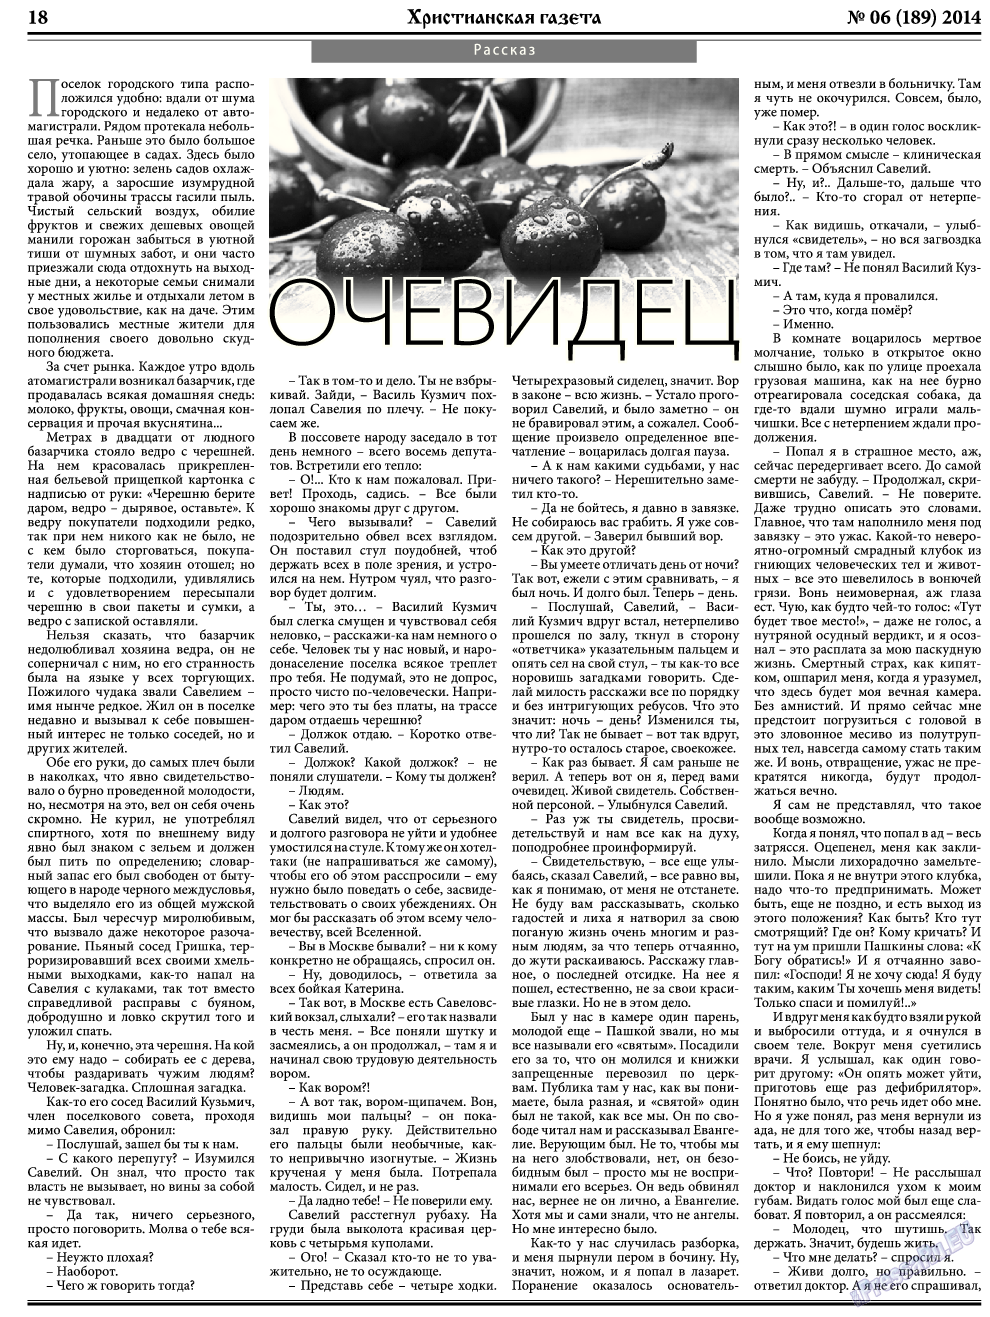 Христианская газета, газета. 2014 №6 стр.26